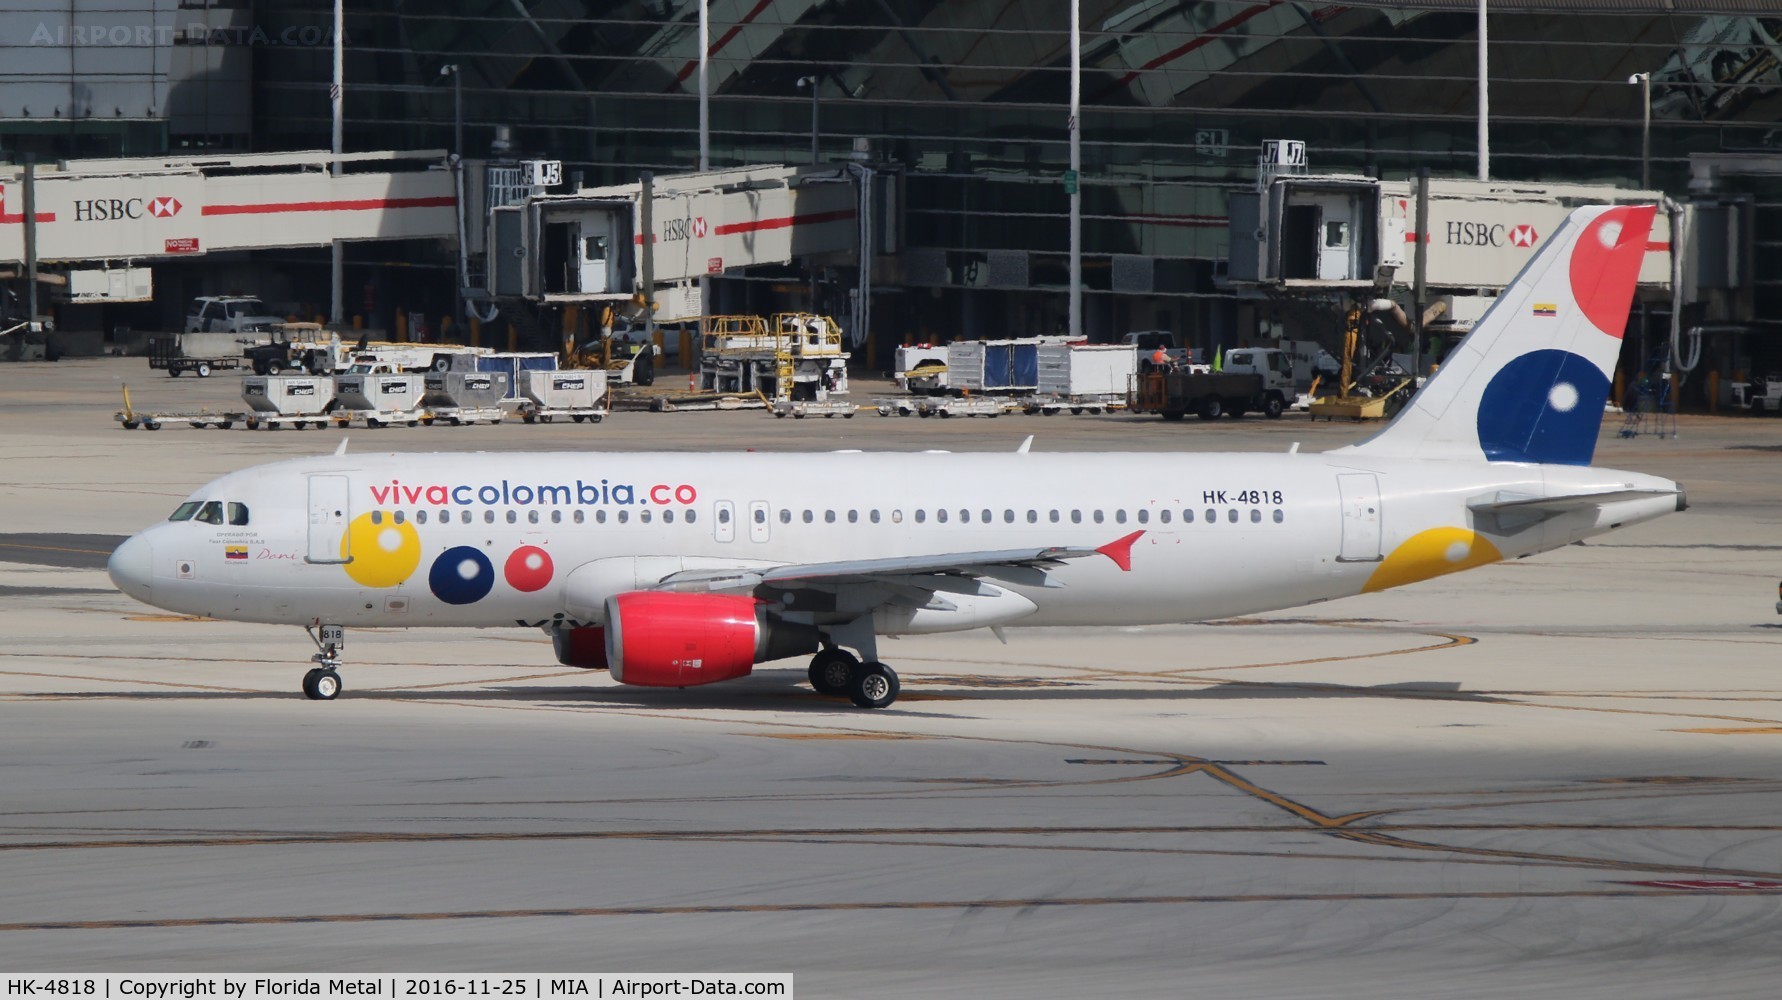 HK-4818, 2000 Airbus A320-214 C/N 1306, Viva Colombia